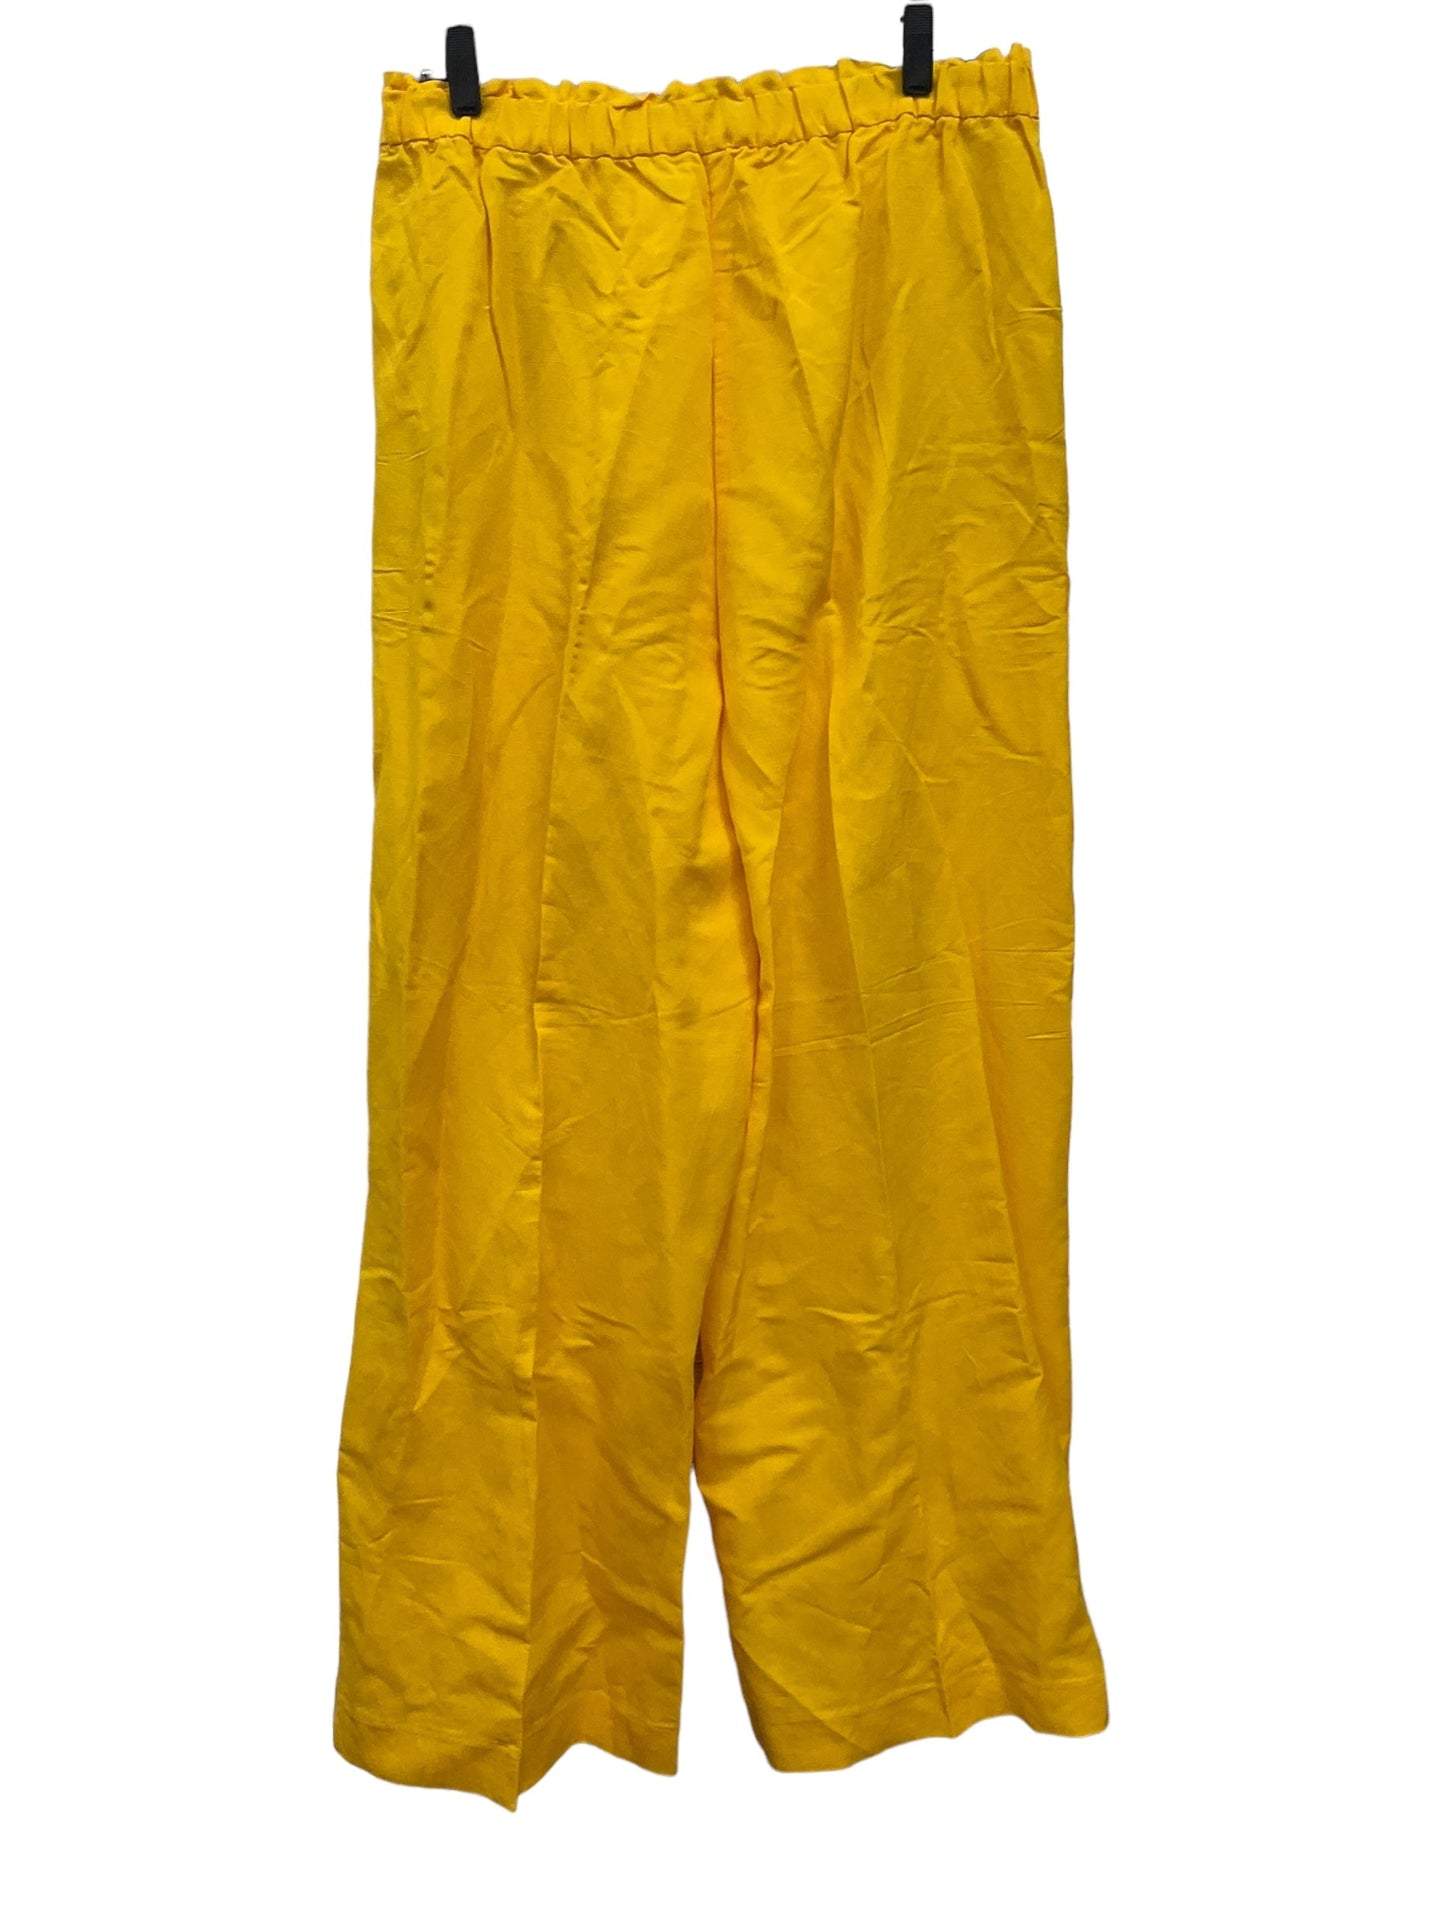 Yellow Pants Dress Ann Taylor, Size L